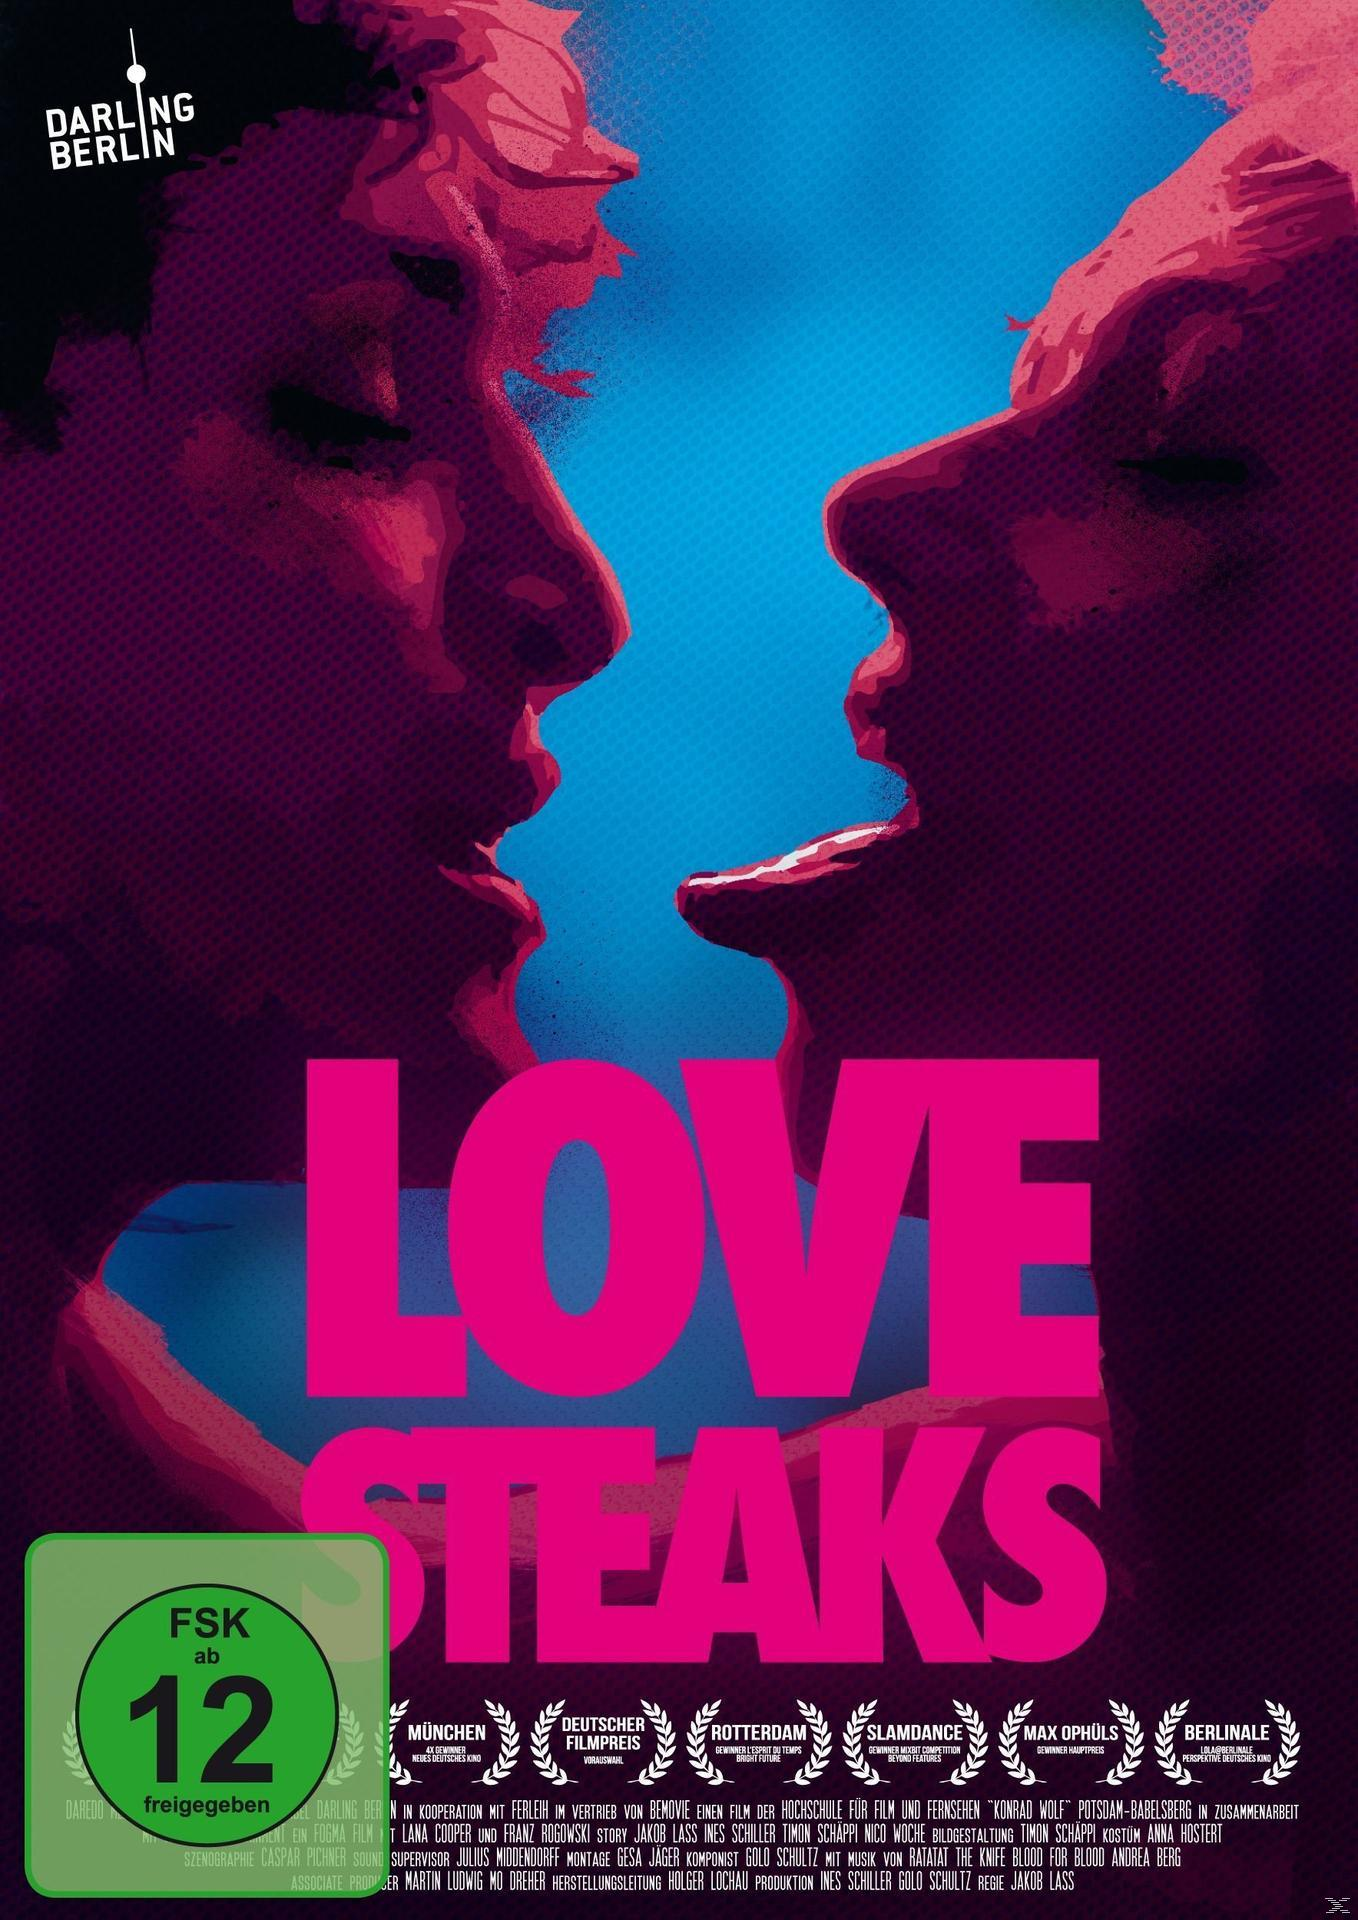 STEAKS DVD LOVE